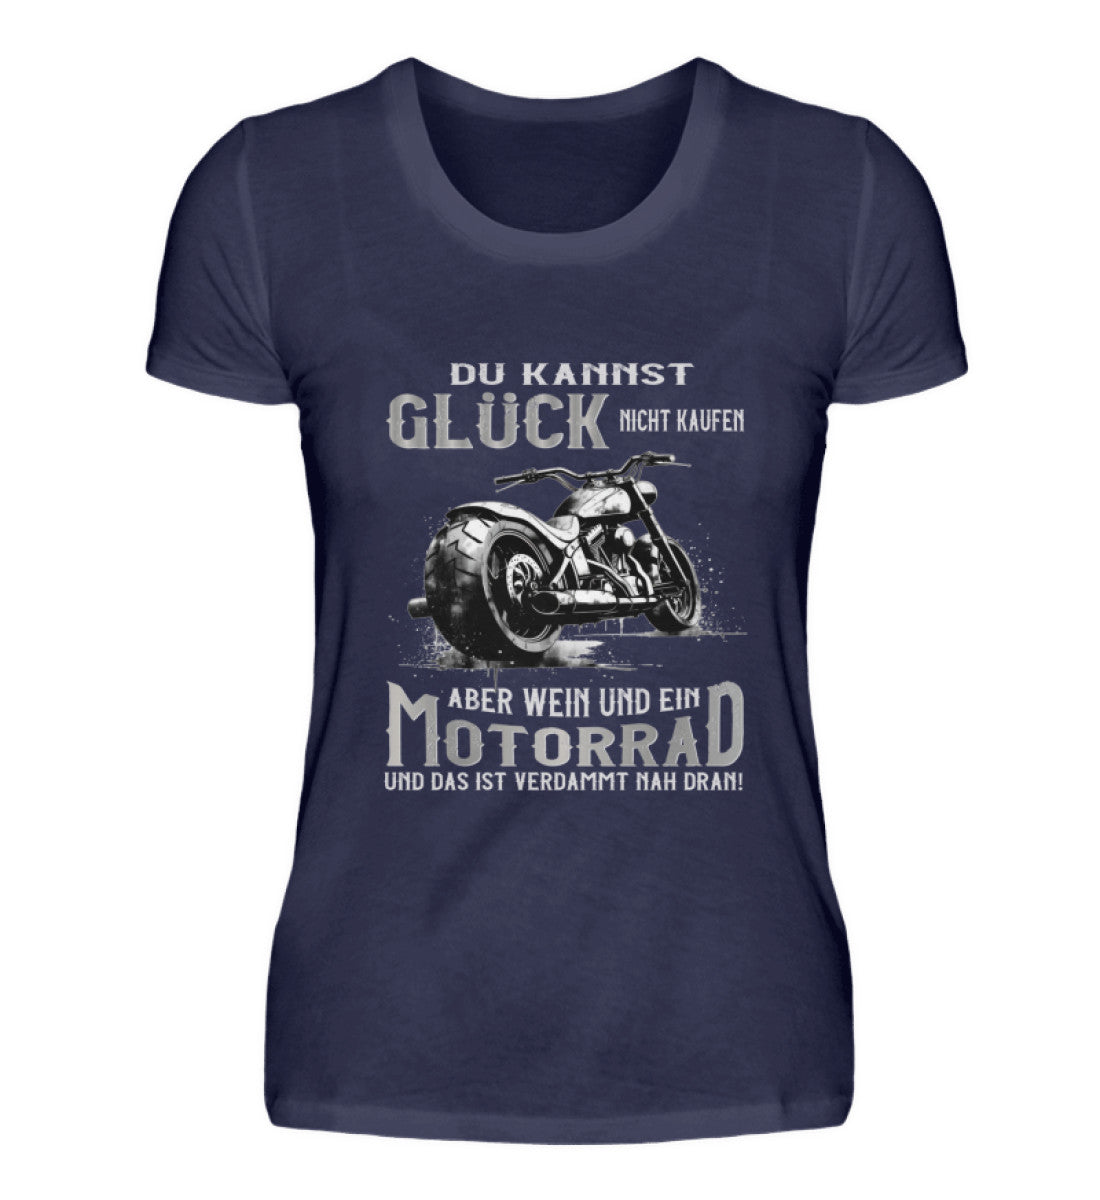 Ein Bikerin T-Shirt für Motorradfahrerinnen von Wingbikers mit dem Aufdruck, Du kannst Glück nicht kaufen, aber Wein und ein Motorrad und das ist verdammt nah dran! - in navy blau.